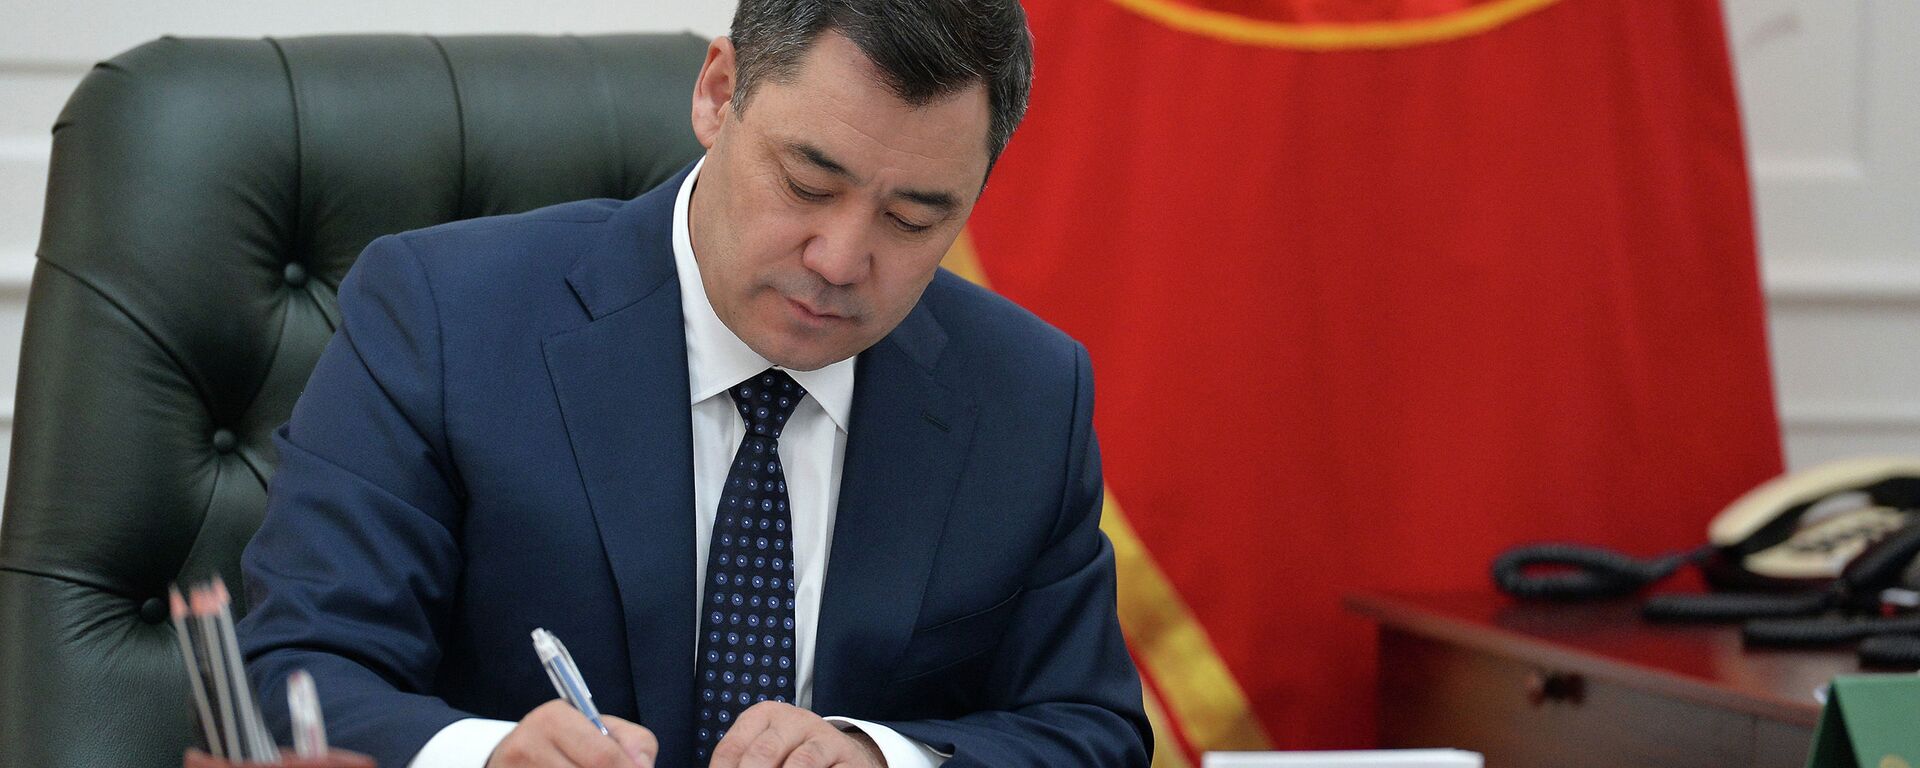 Президент Кыргызстана Садыр Жапаров подписывает документ. Архивное фото - Sputnik Кыргызстан, 1920, 16.04.2021